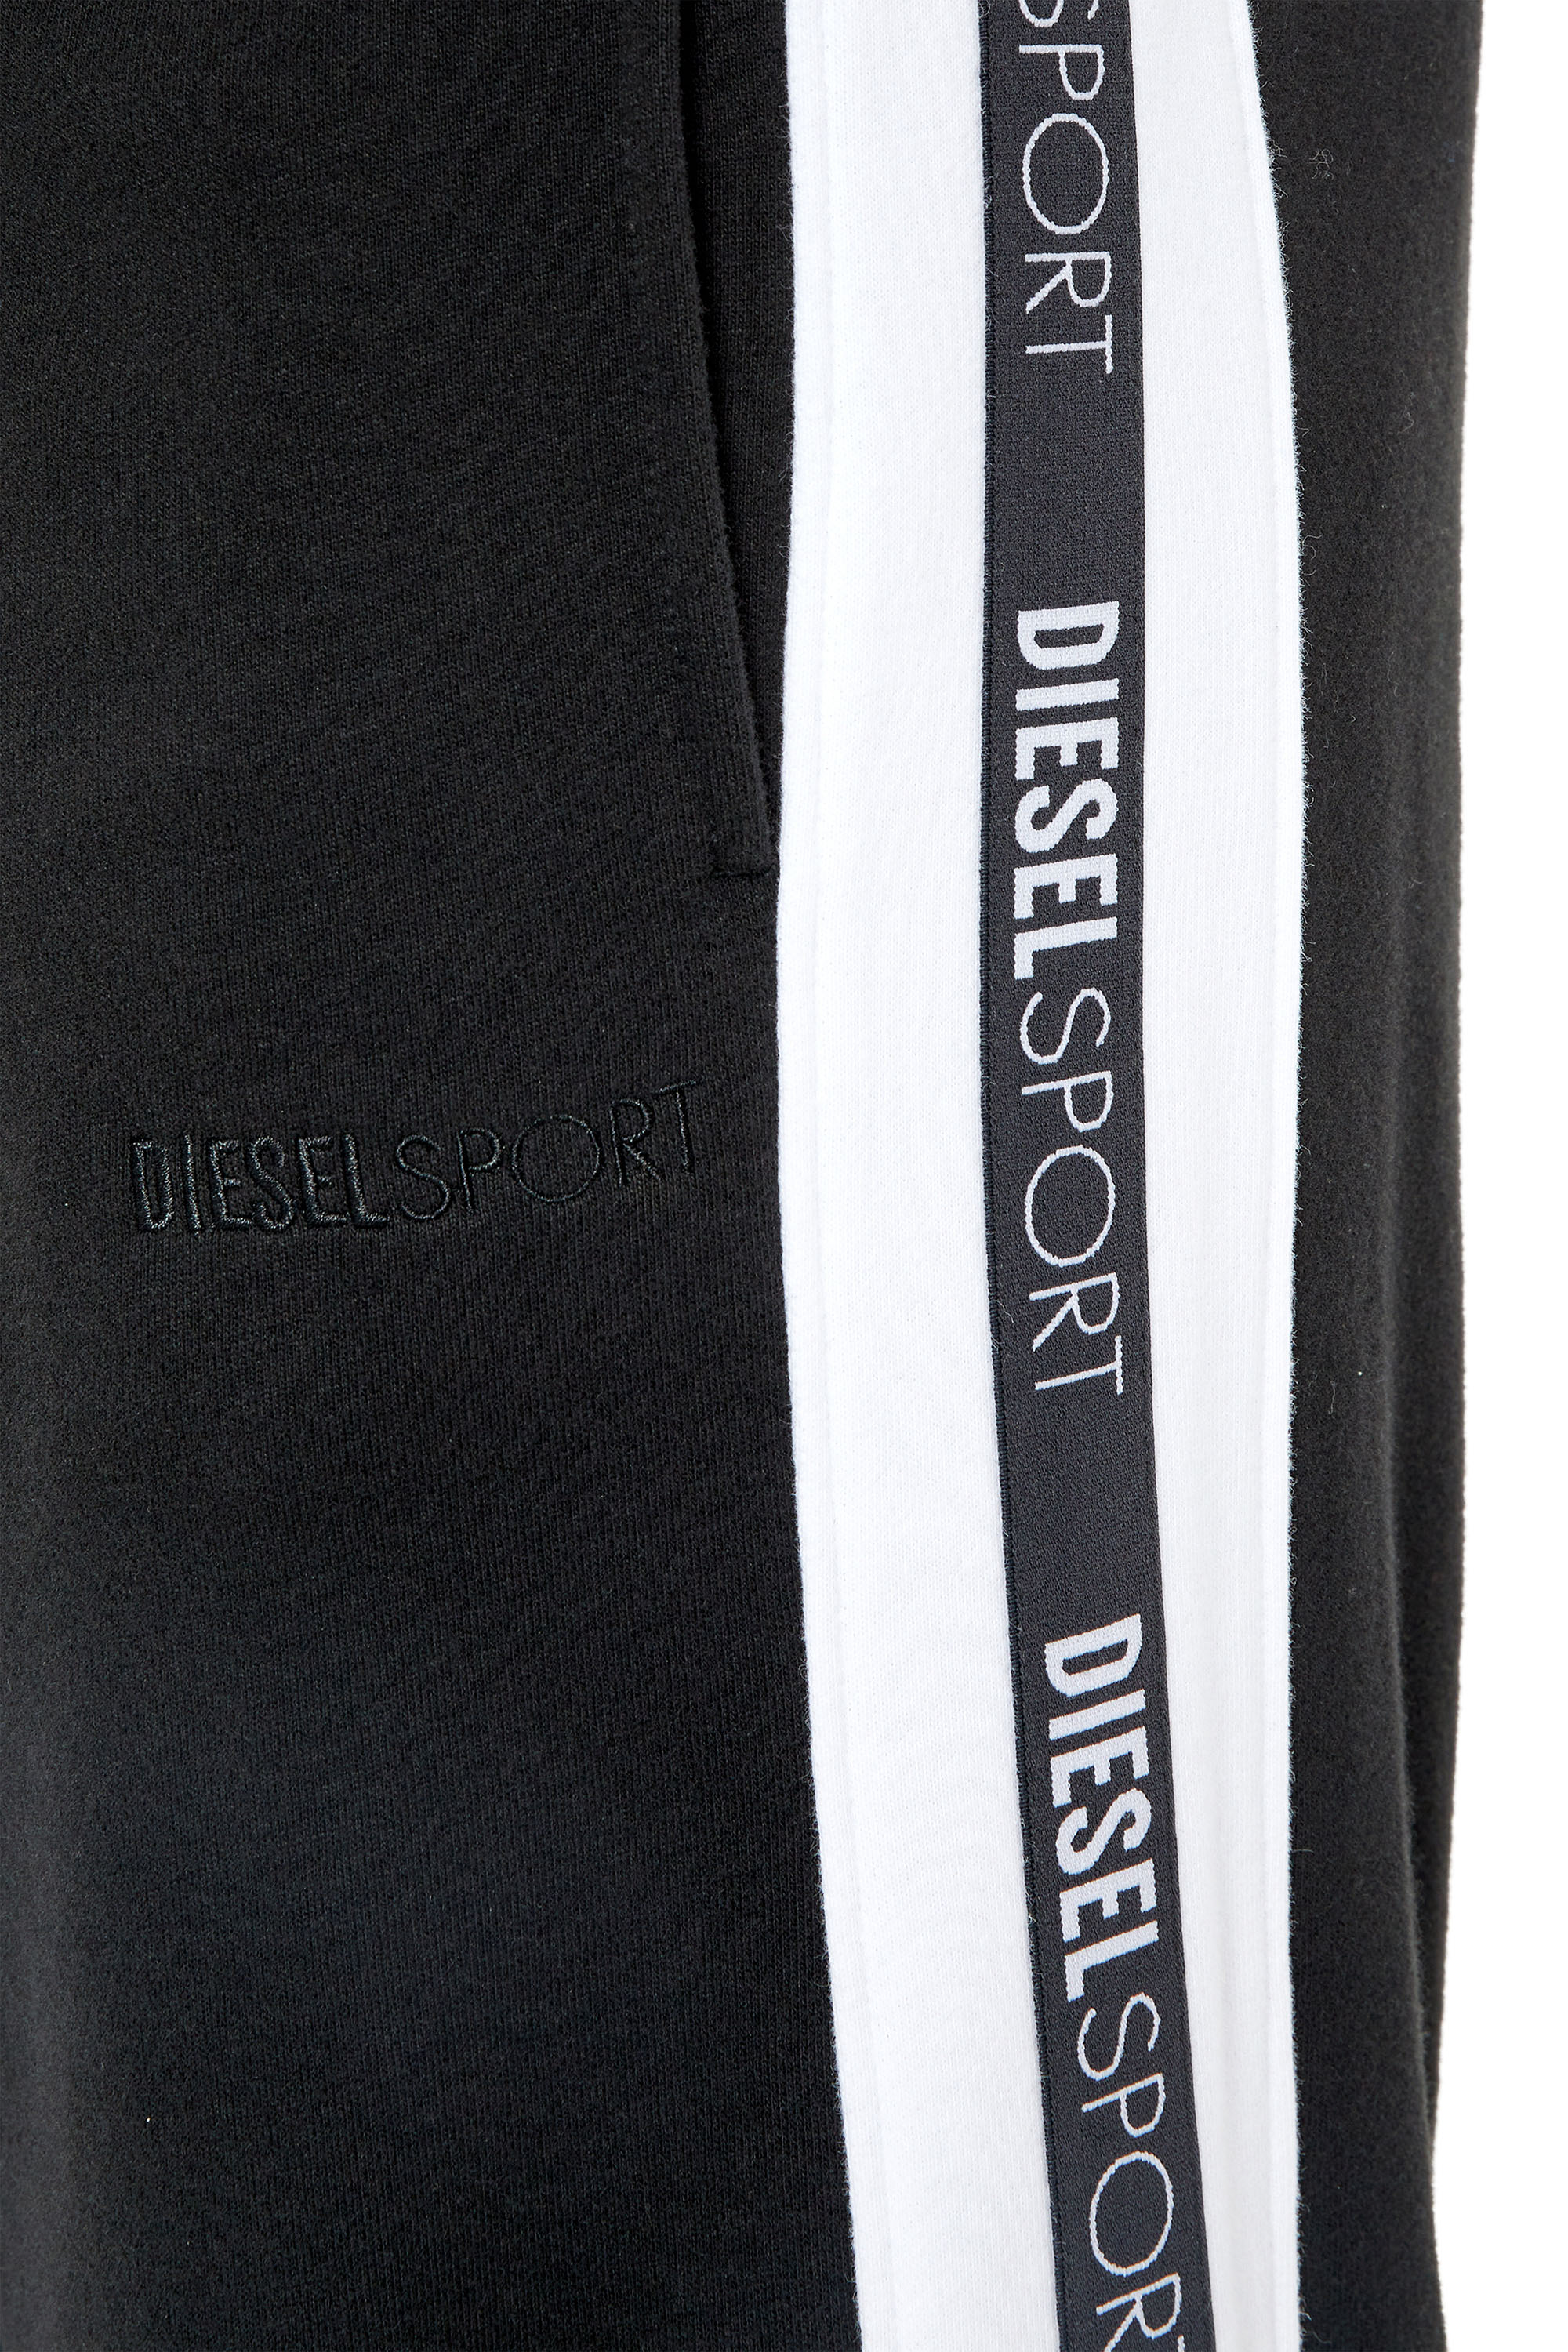 Diesel - AMSB-JAGER-HT33, Black - Image 4